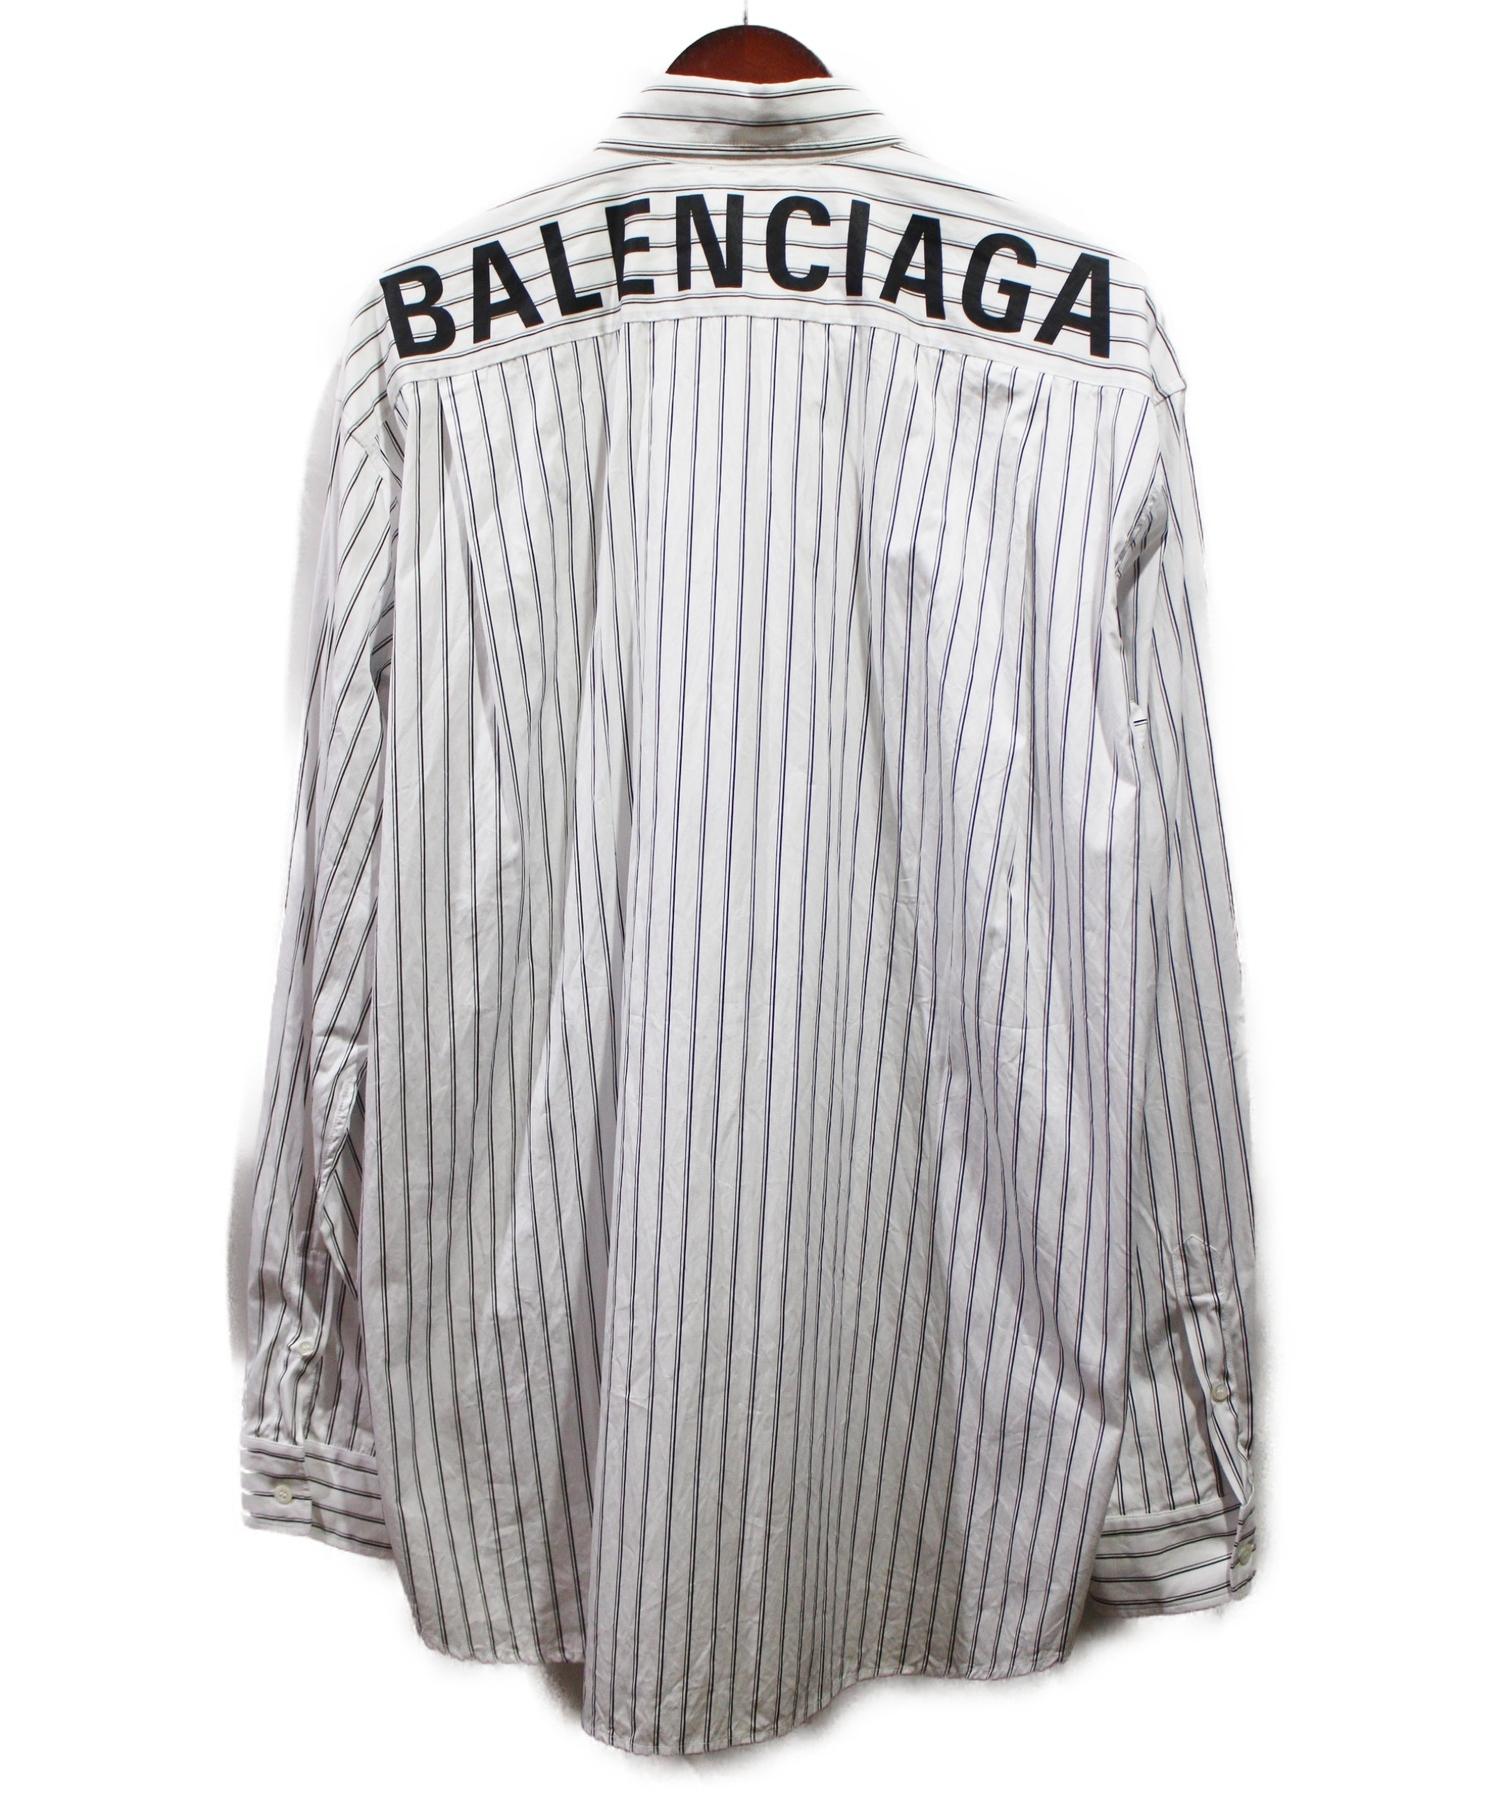 バレンシアガ ニュースウィングシャツ バックロゴ シャツ 超美品-